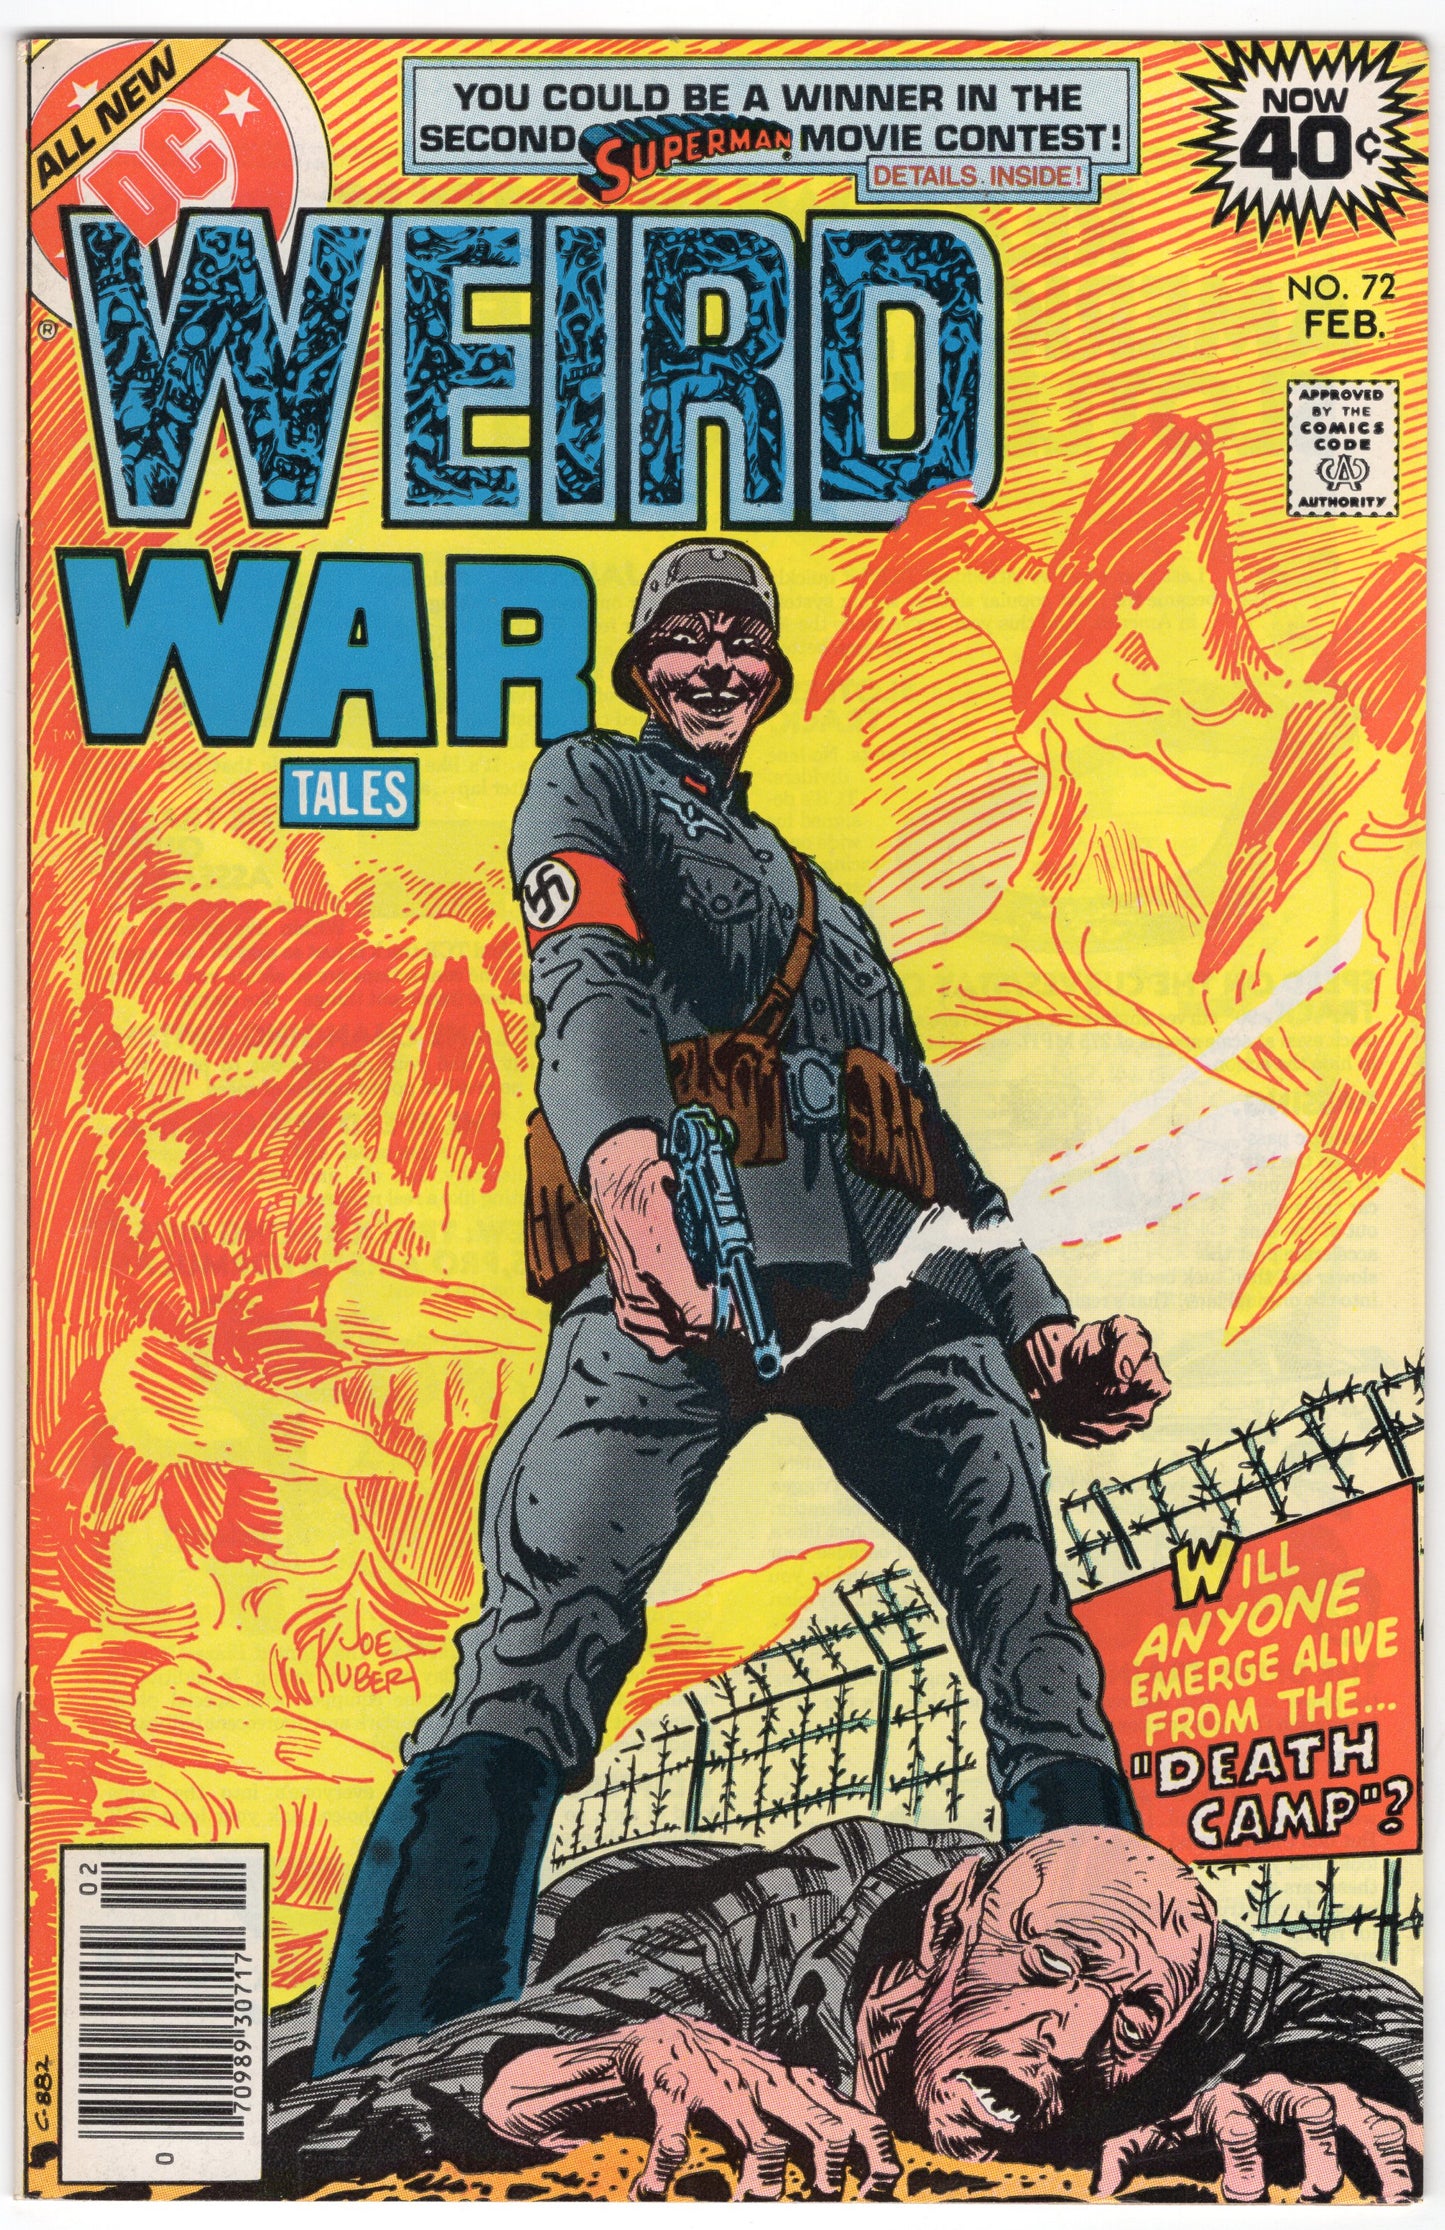 Weird War Tales - Issue #72 (Feb. 1979 - DC Comics) VF-